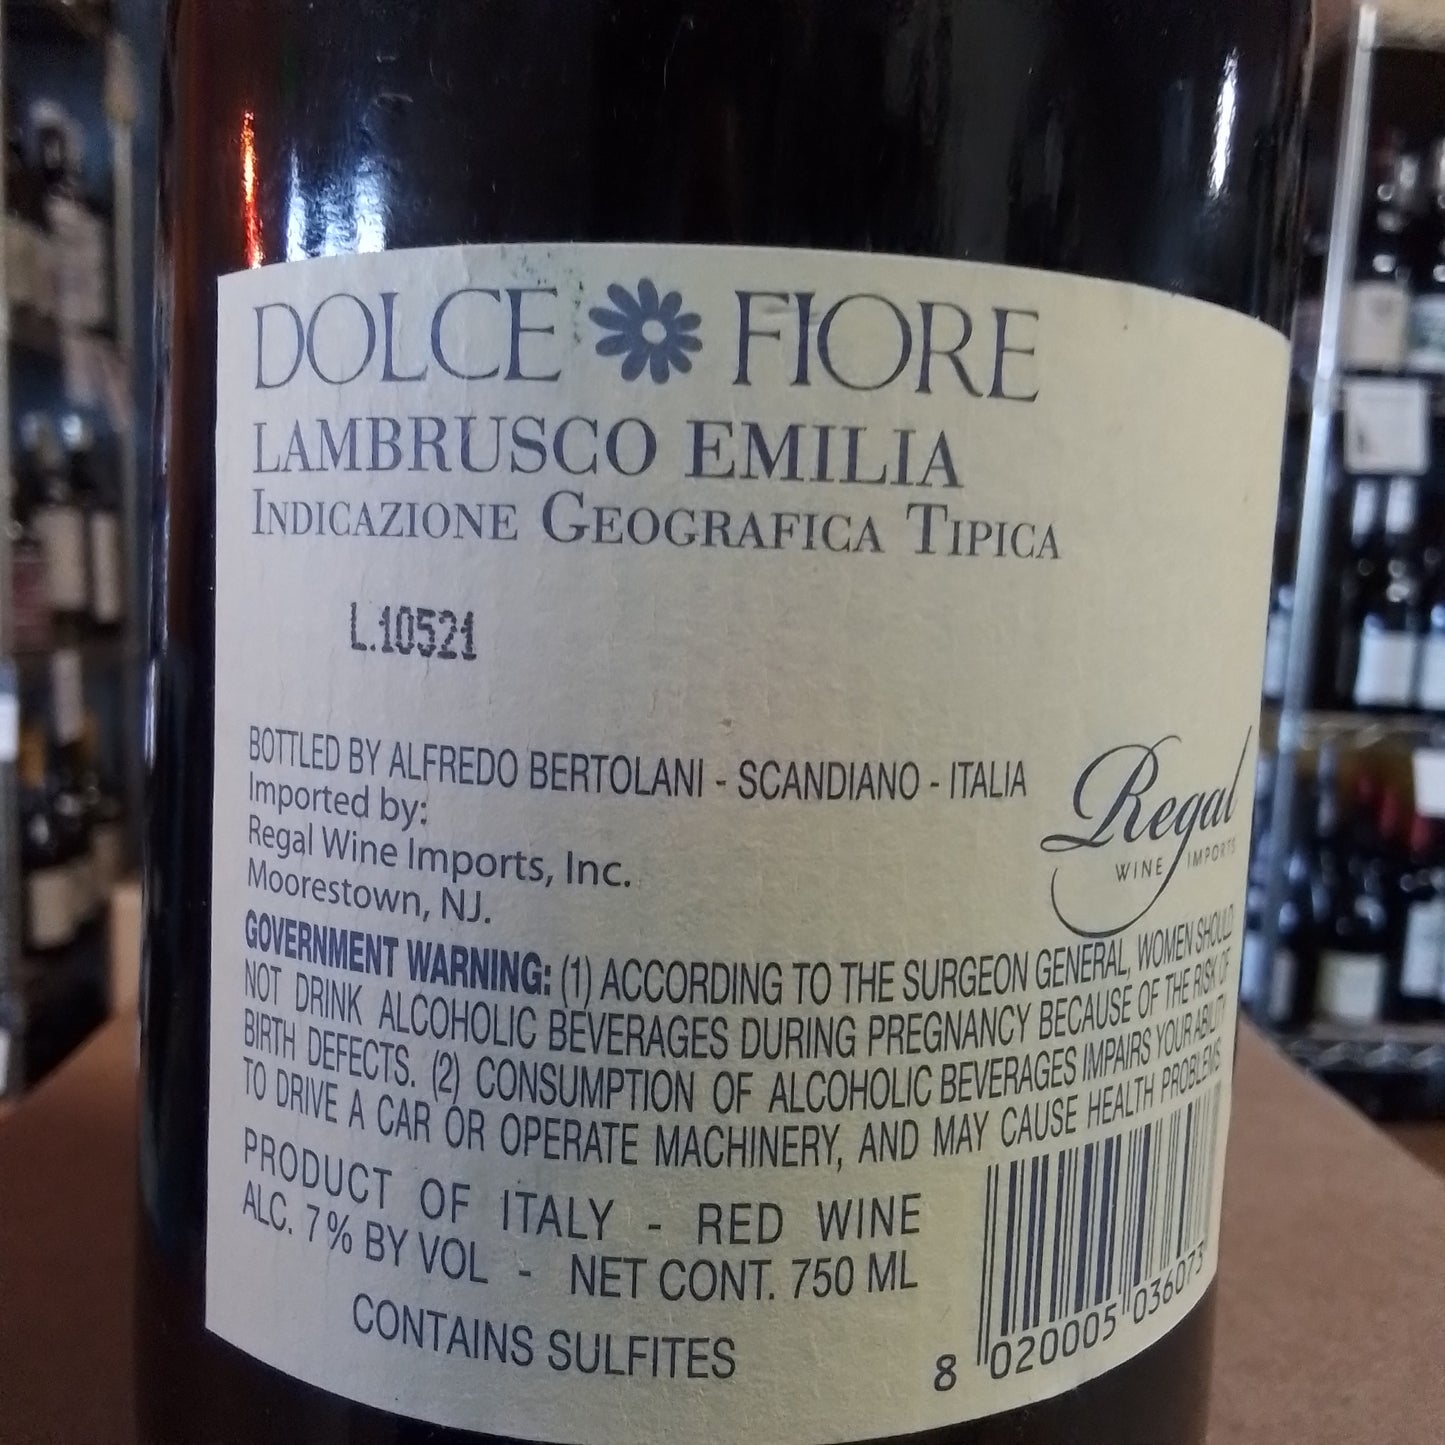 BERTOLANI NV Lambrusco Emilia 'Dolce Fiore' (Emilia-Romagna, Italy)